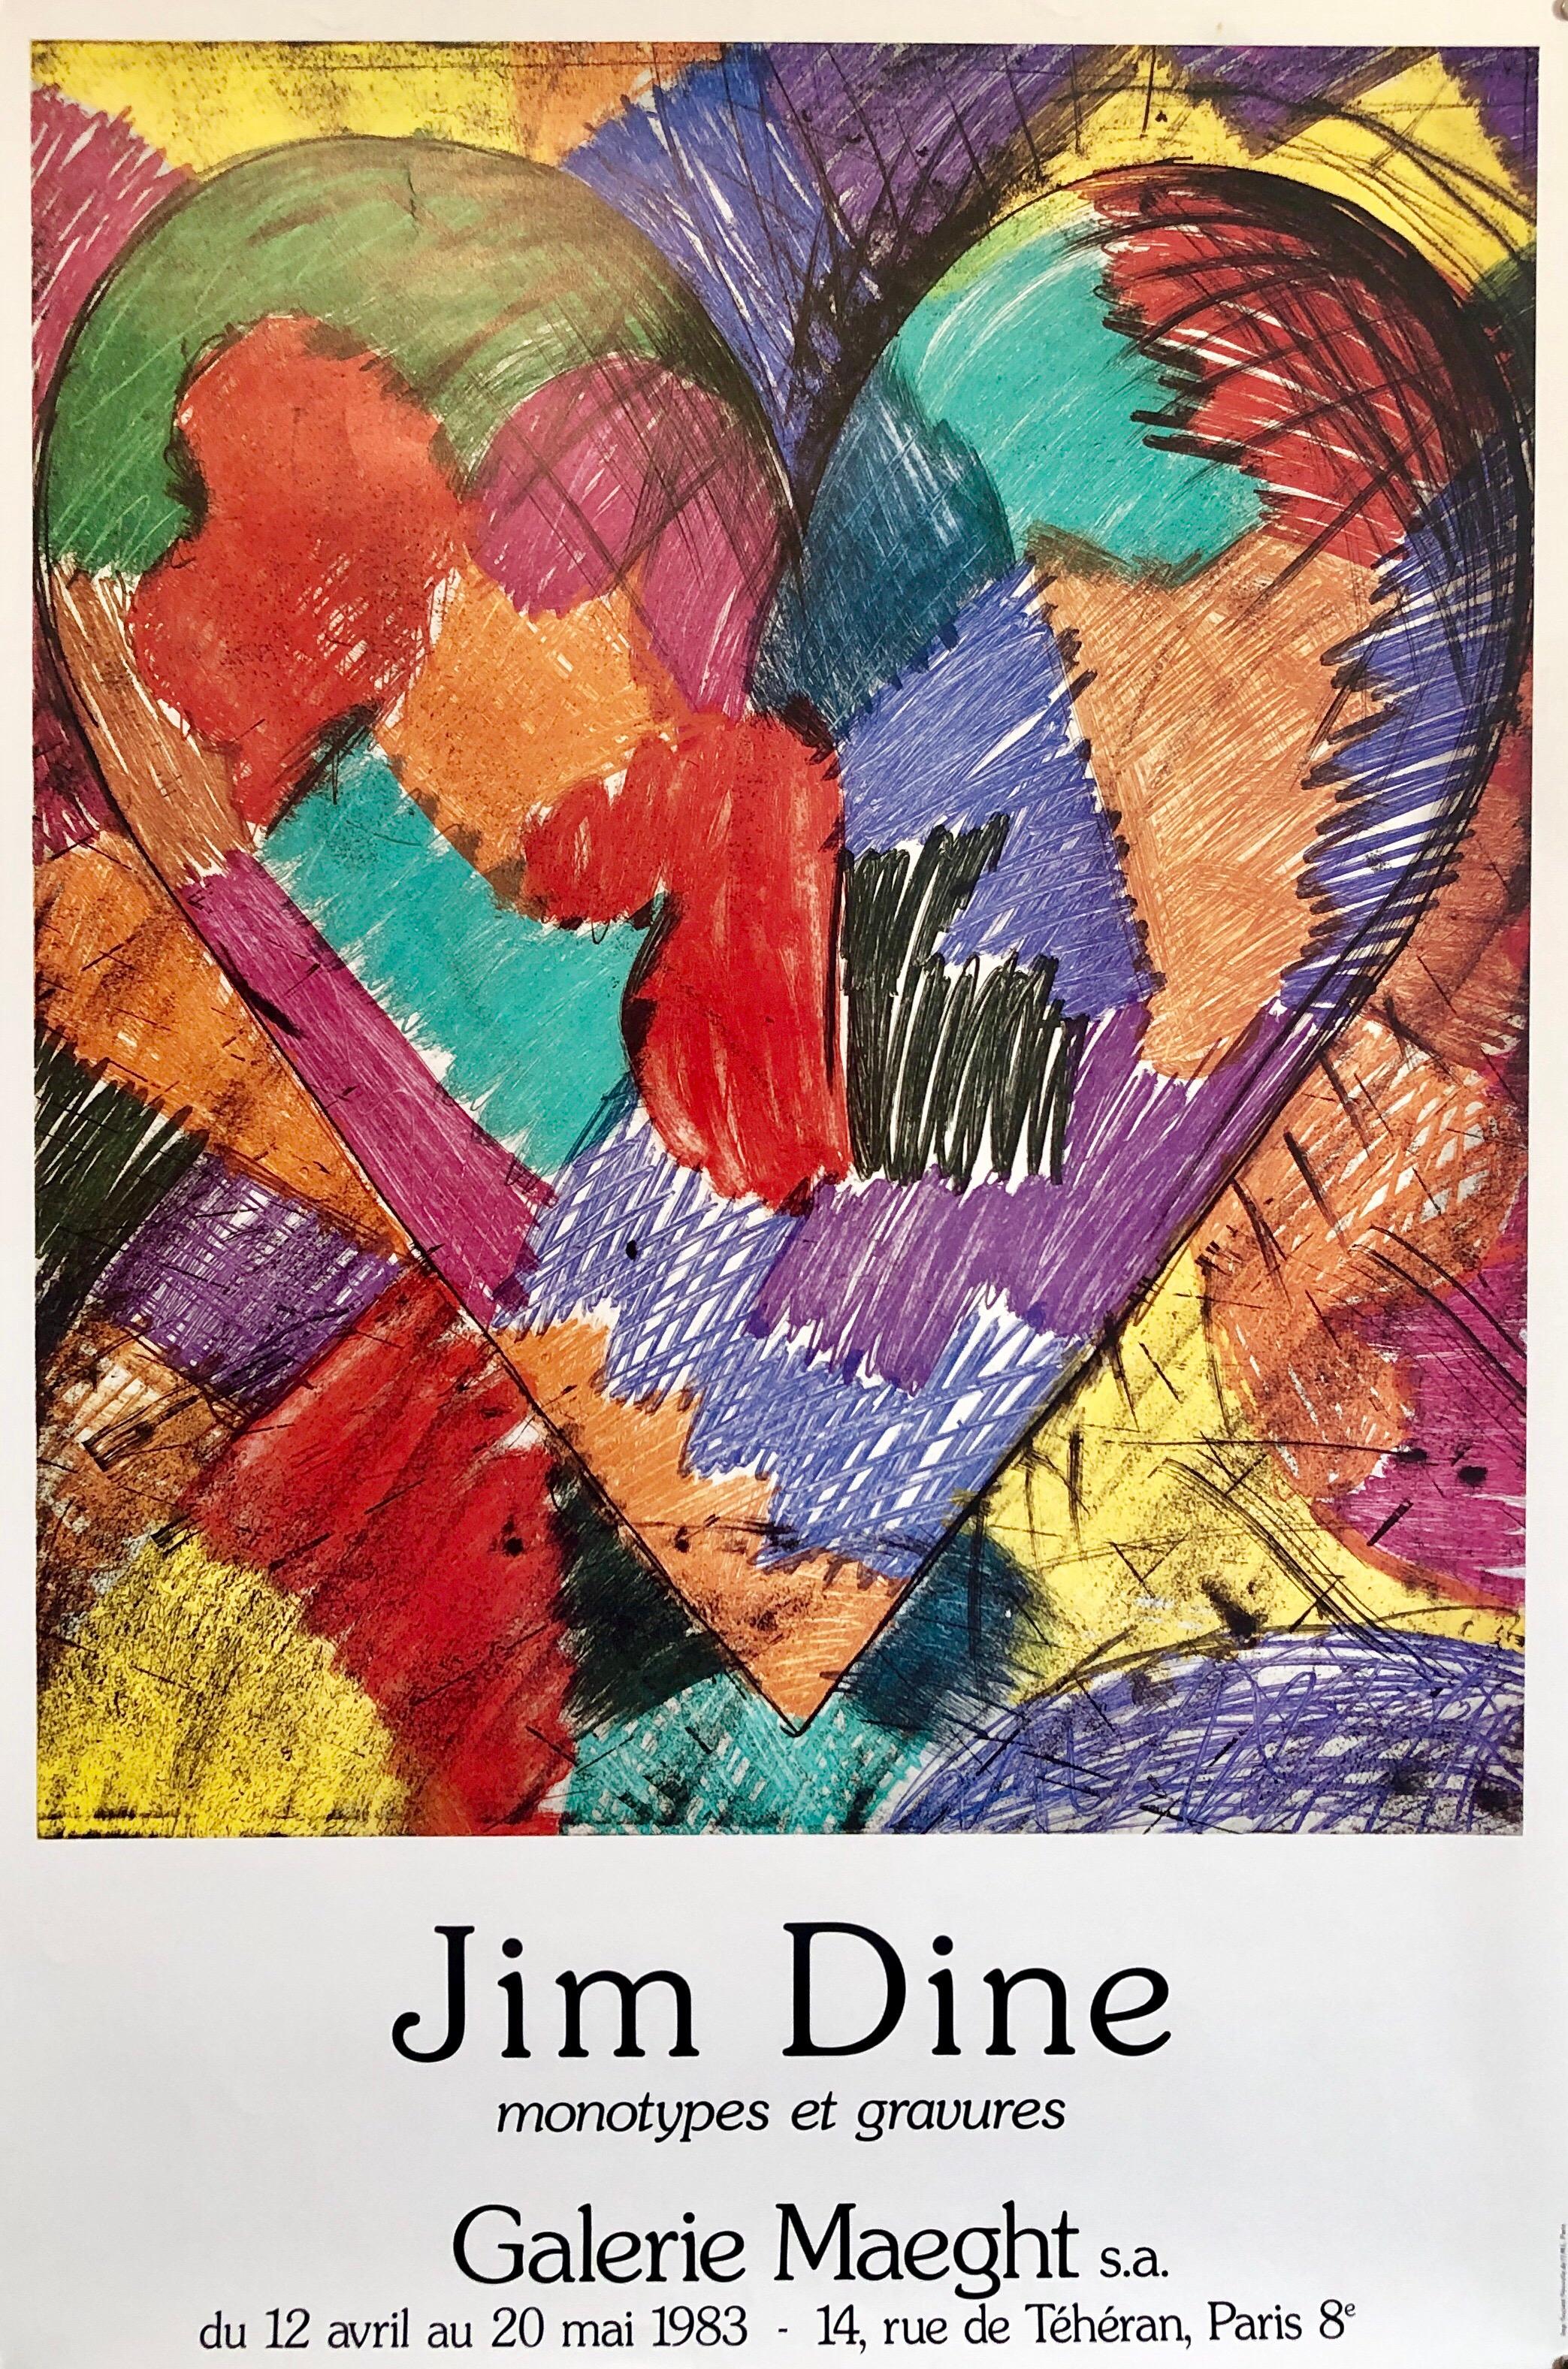 Jim Dine, Monotypes et Gravures, Galerie Maeght, Paris, 1983.
Vintage Offset Lithographie Poster Amerikanische zeitgenössische Pop Art.
Ein bunter Herz-Quilt in einem Regenbogen von Farben.

Jim Dine (geboren am 16. Juni 1935) ist ein amerikanischer